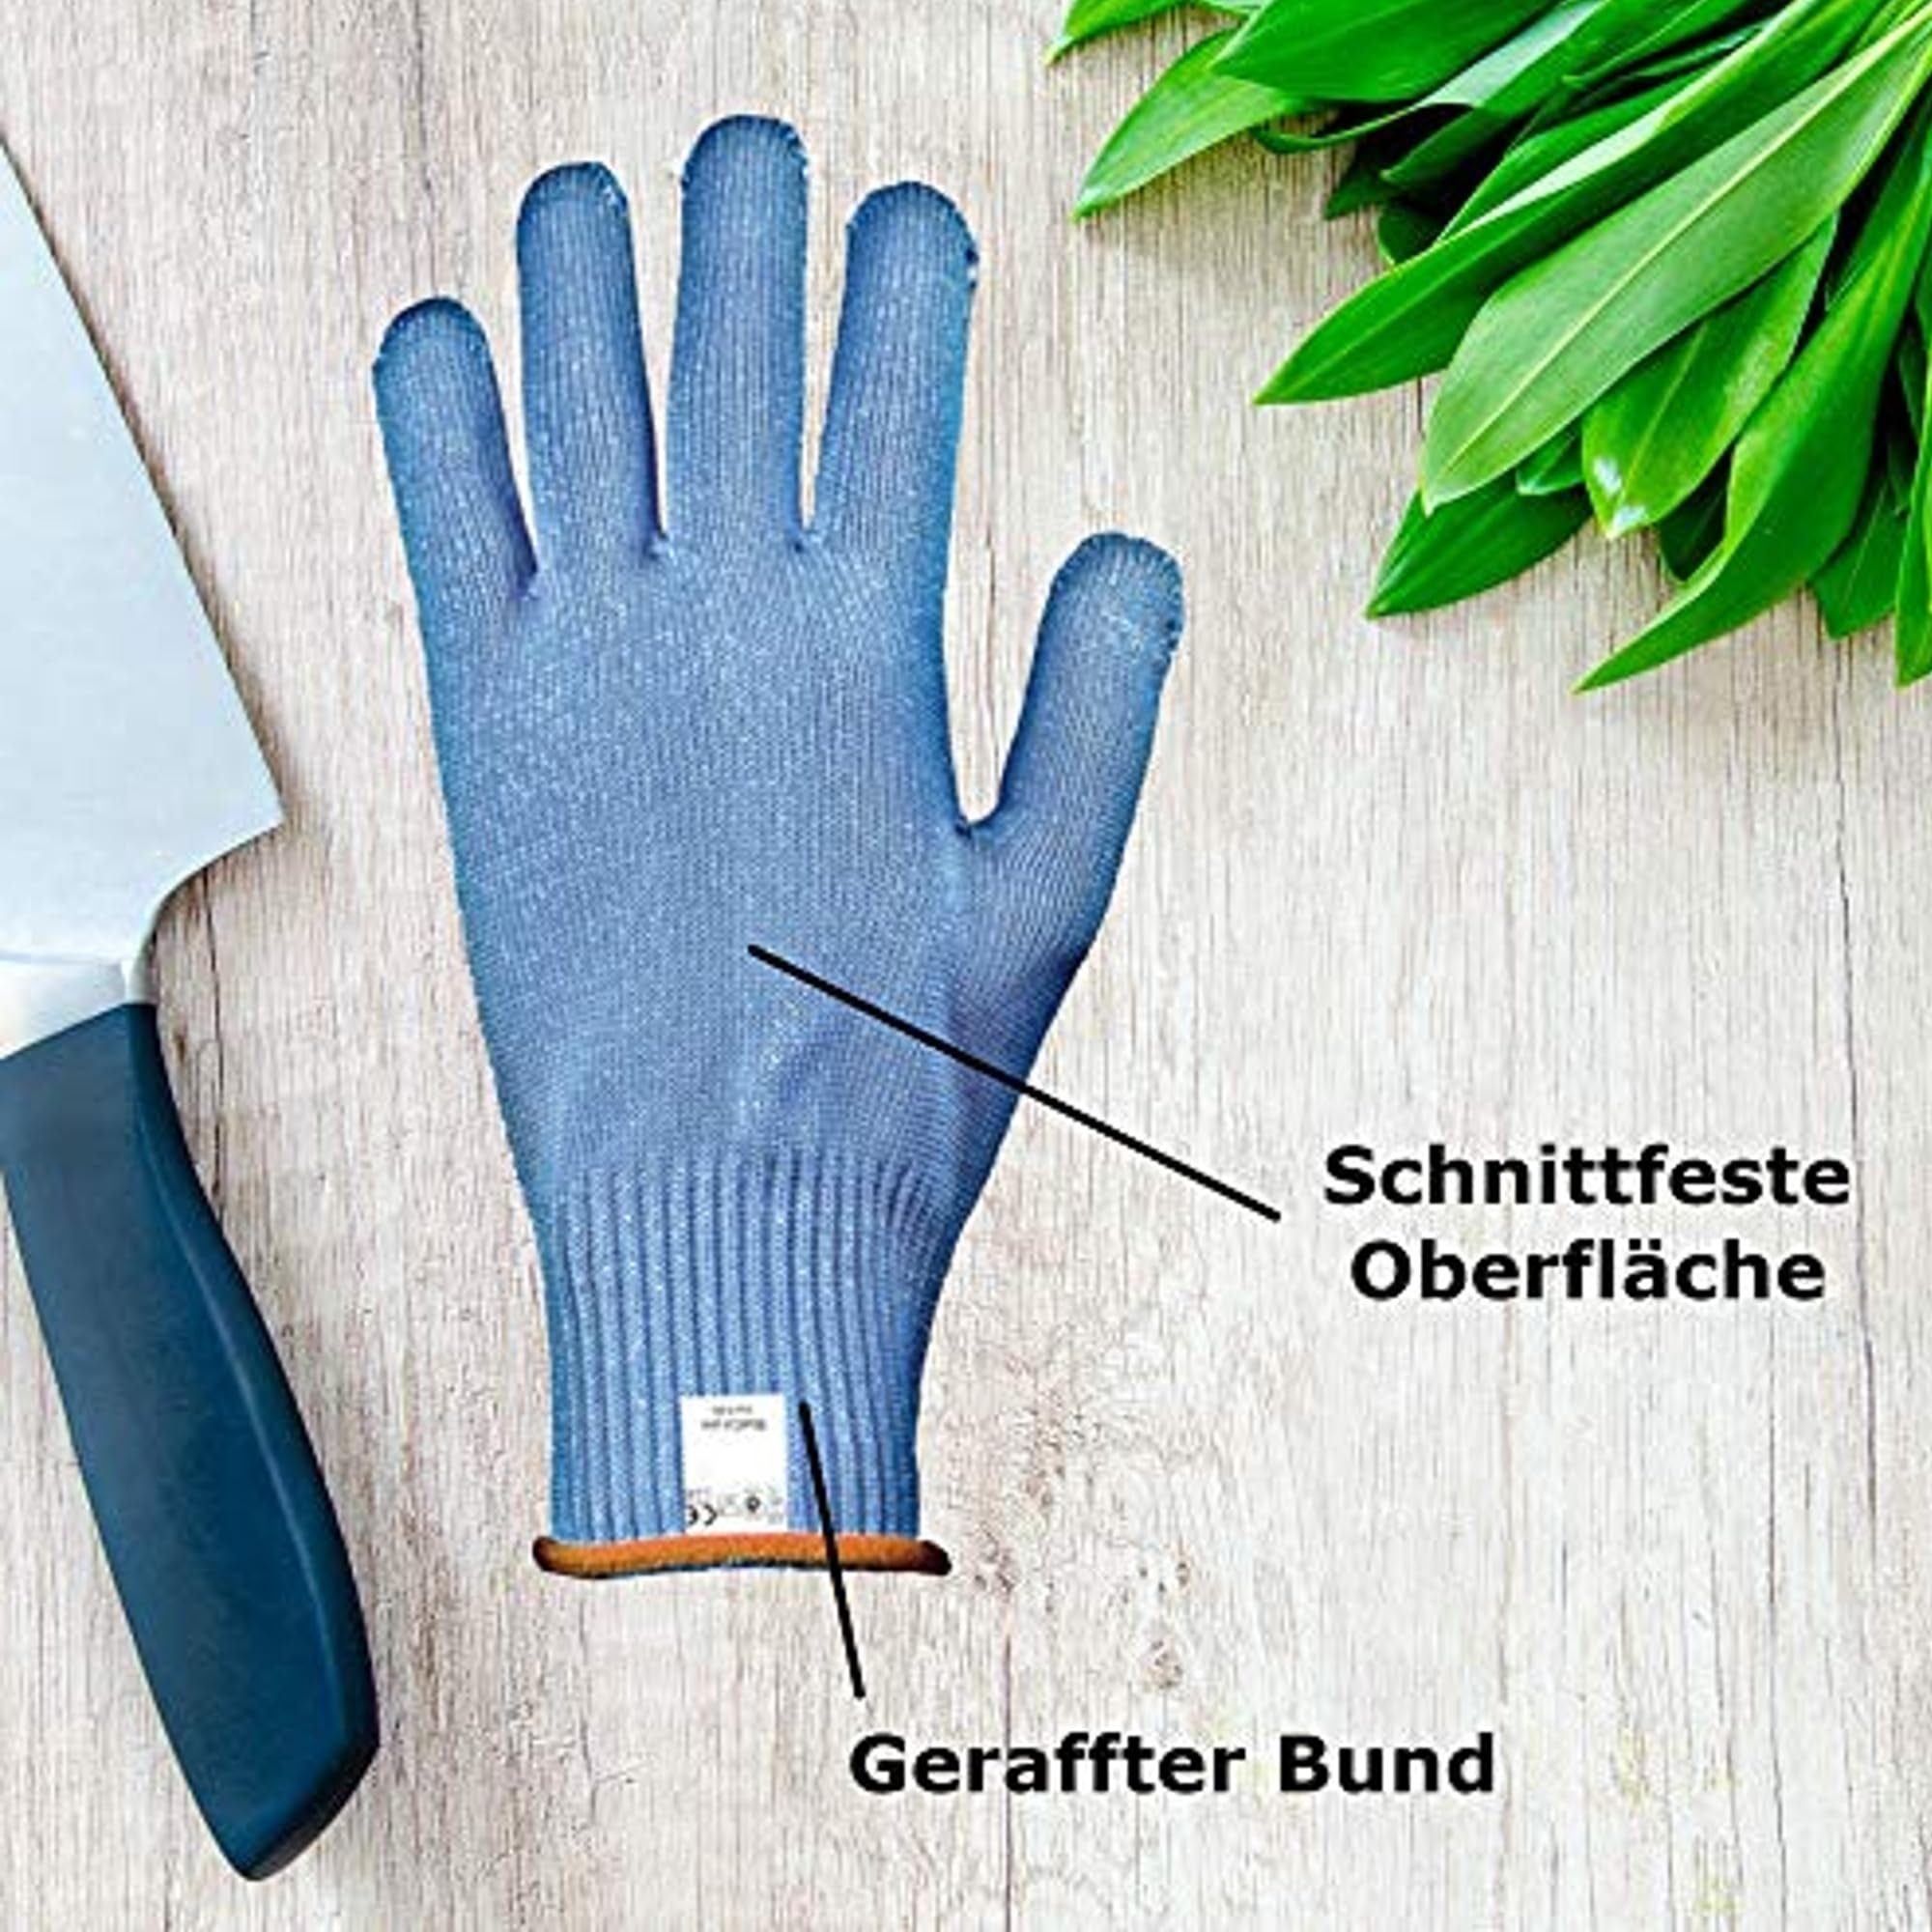 TronicXL Arbeitshandschuhe Gr. 7 Profi Handschuh Stechschutz Schnittschutzhandschuh Schnittschutz